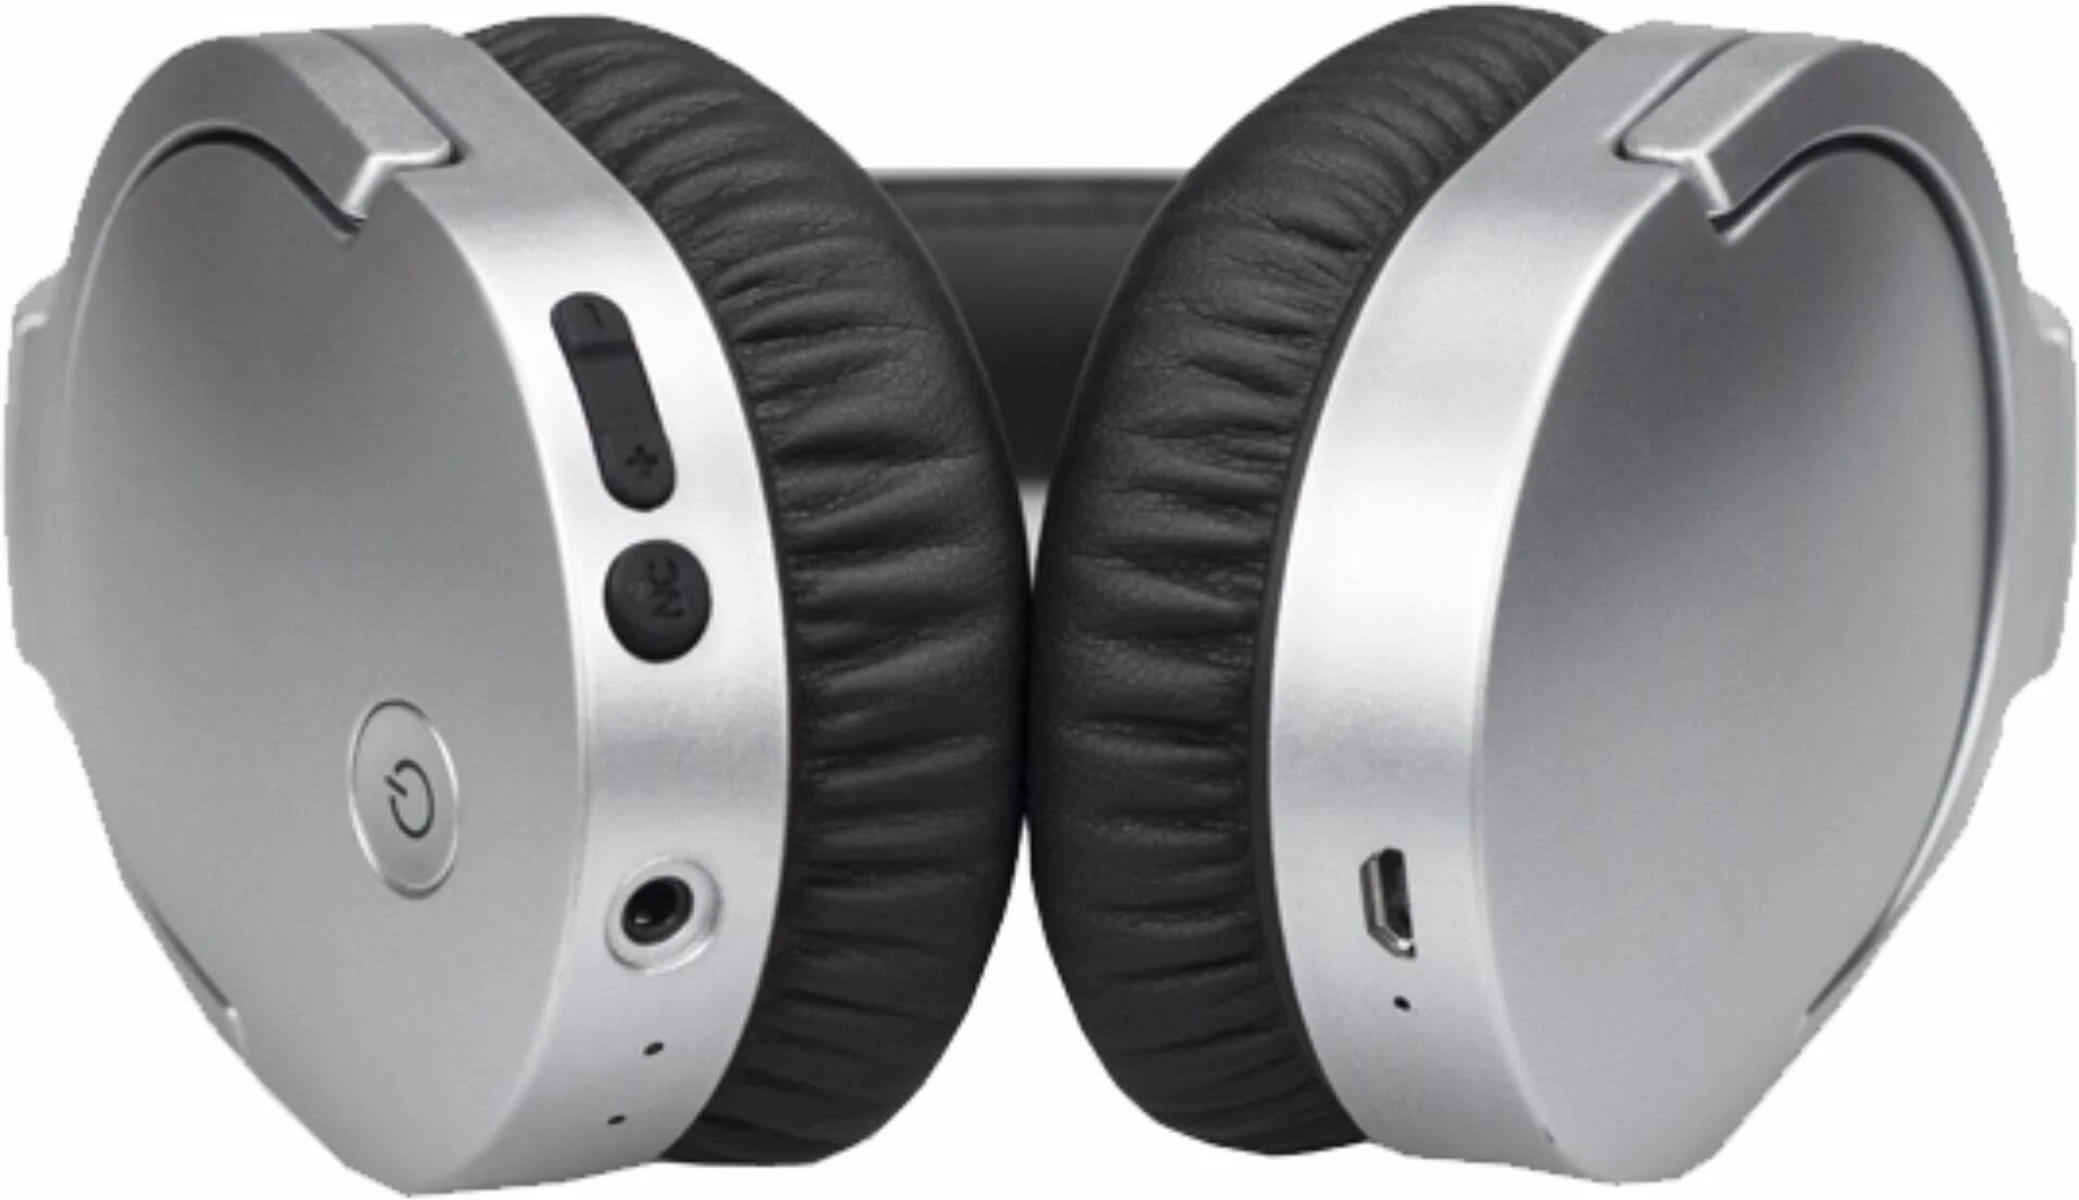 DENVER Bluetooth BTN-207 Kopfhörer Over-ear Creme SAND,